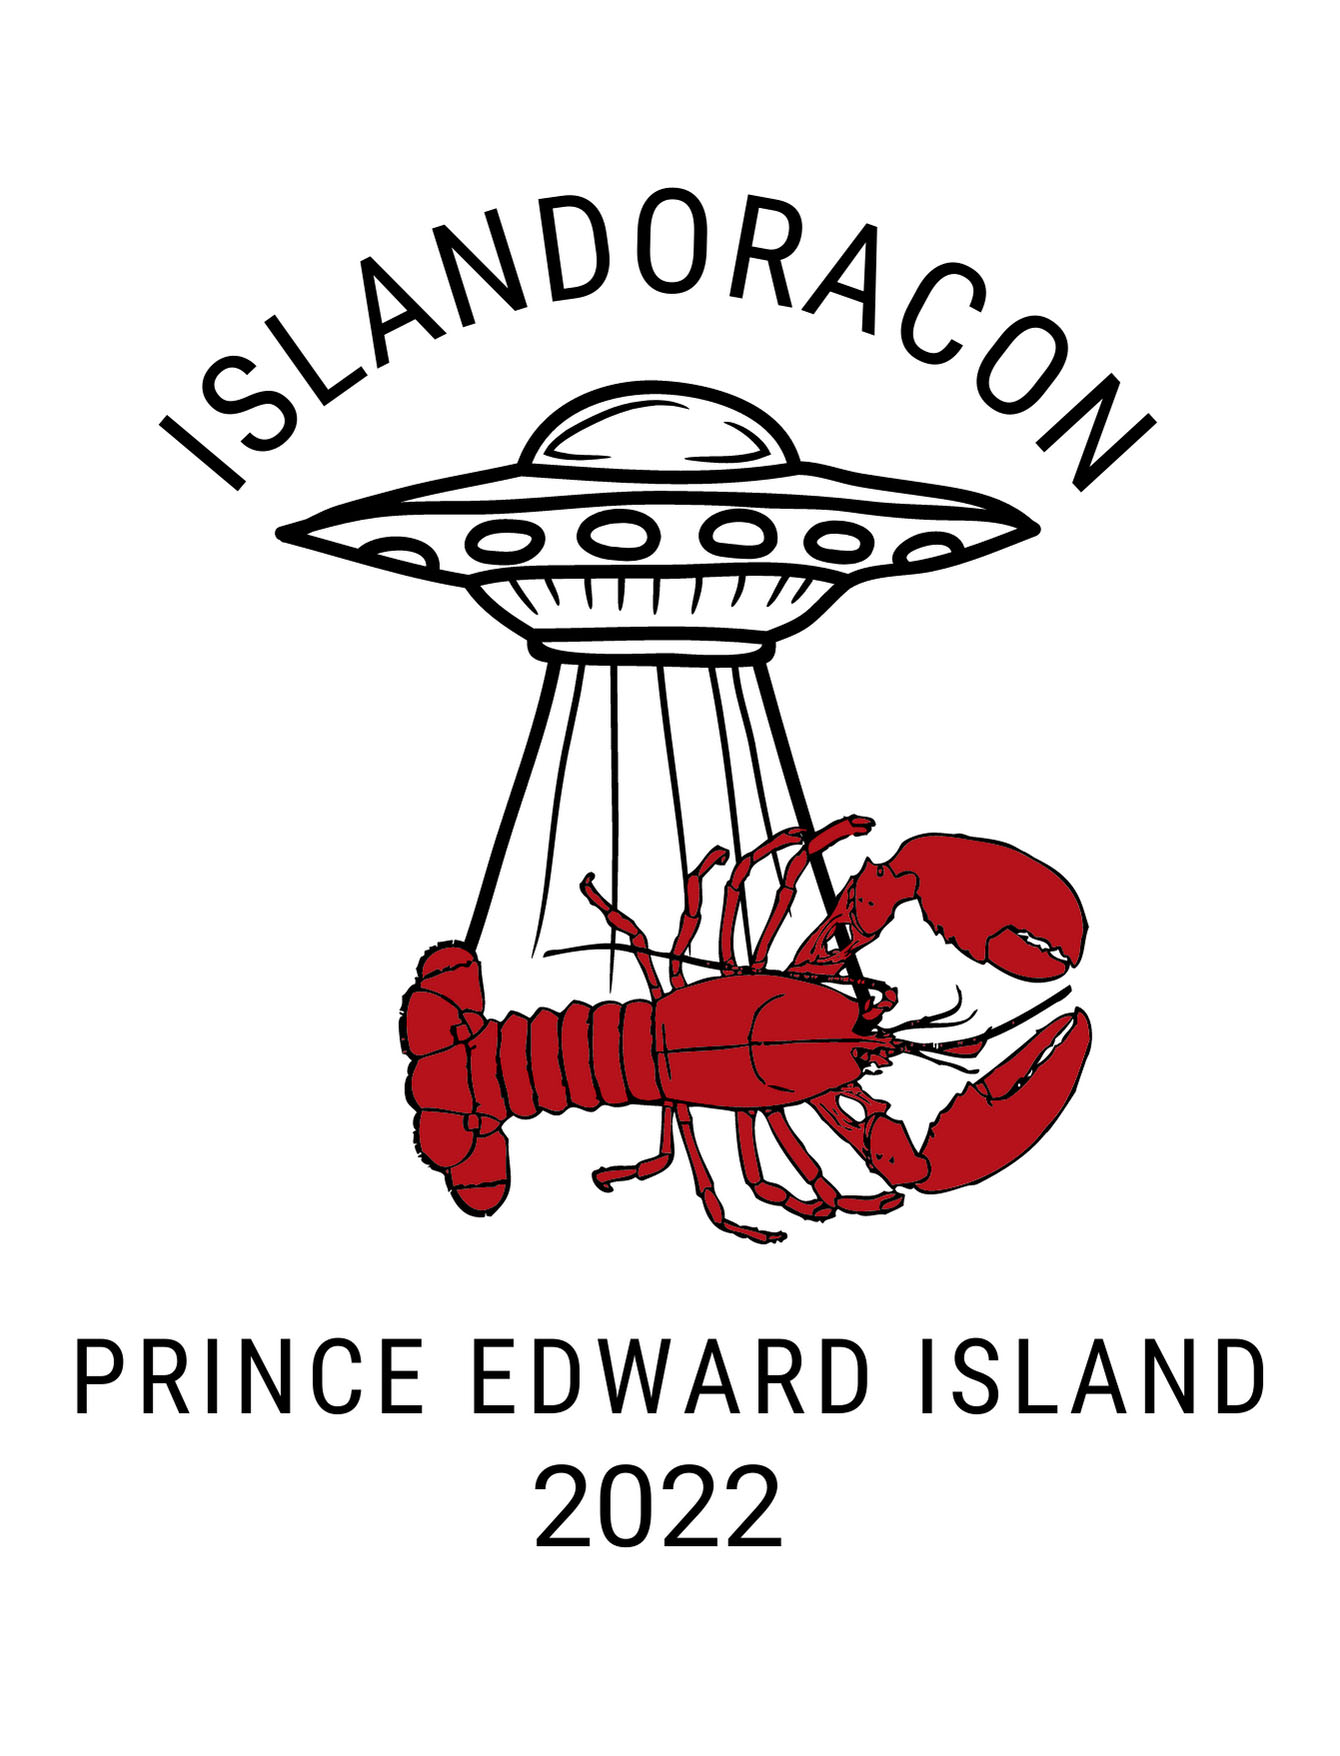 logo design for Islandoracon 2022